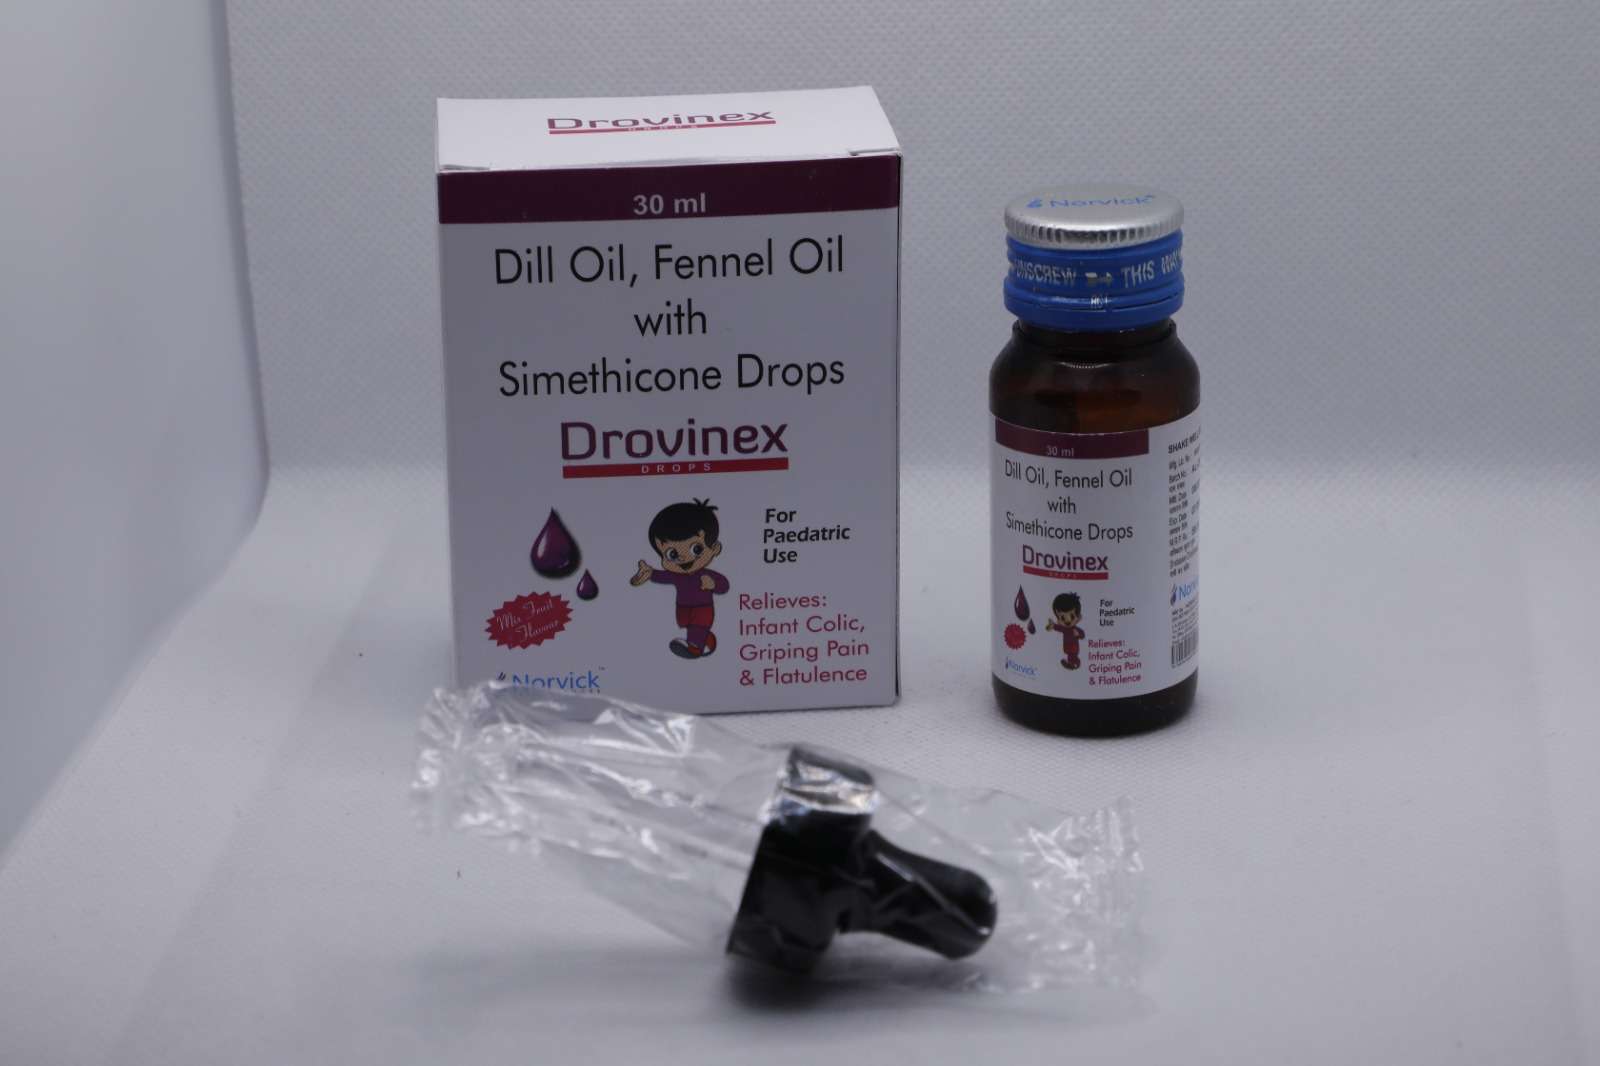 dill oil + fennel oil + simethicone drops